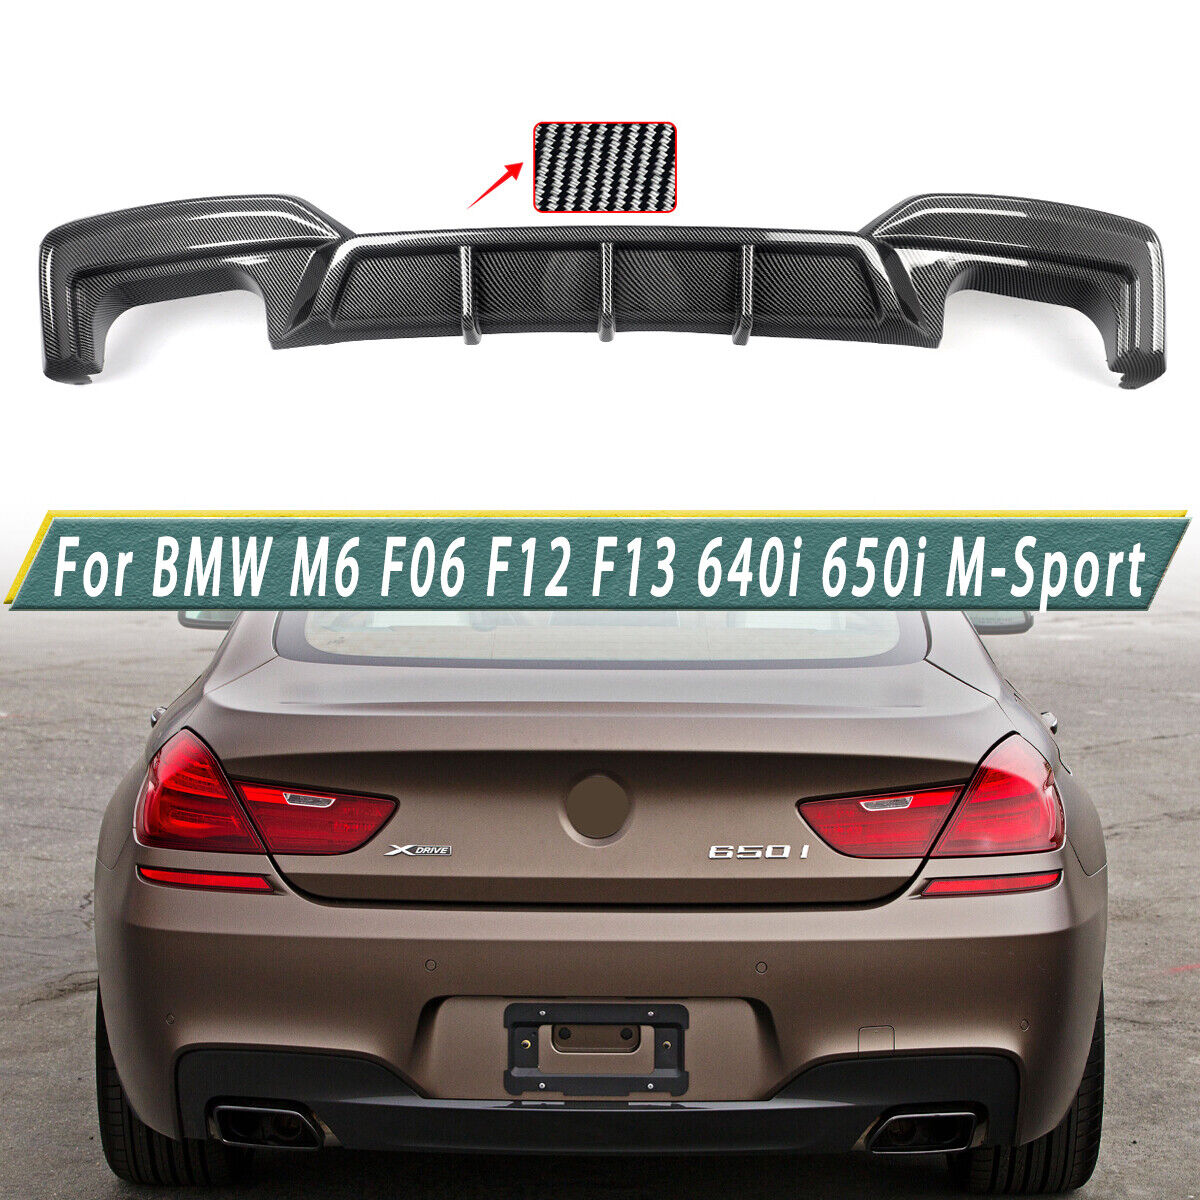 For BMW F06 F12 F13 640i 650i M Sport 2012-2018 Carbon Look Rear Bumper Diffuser